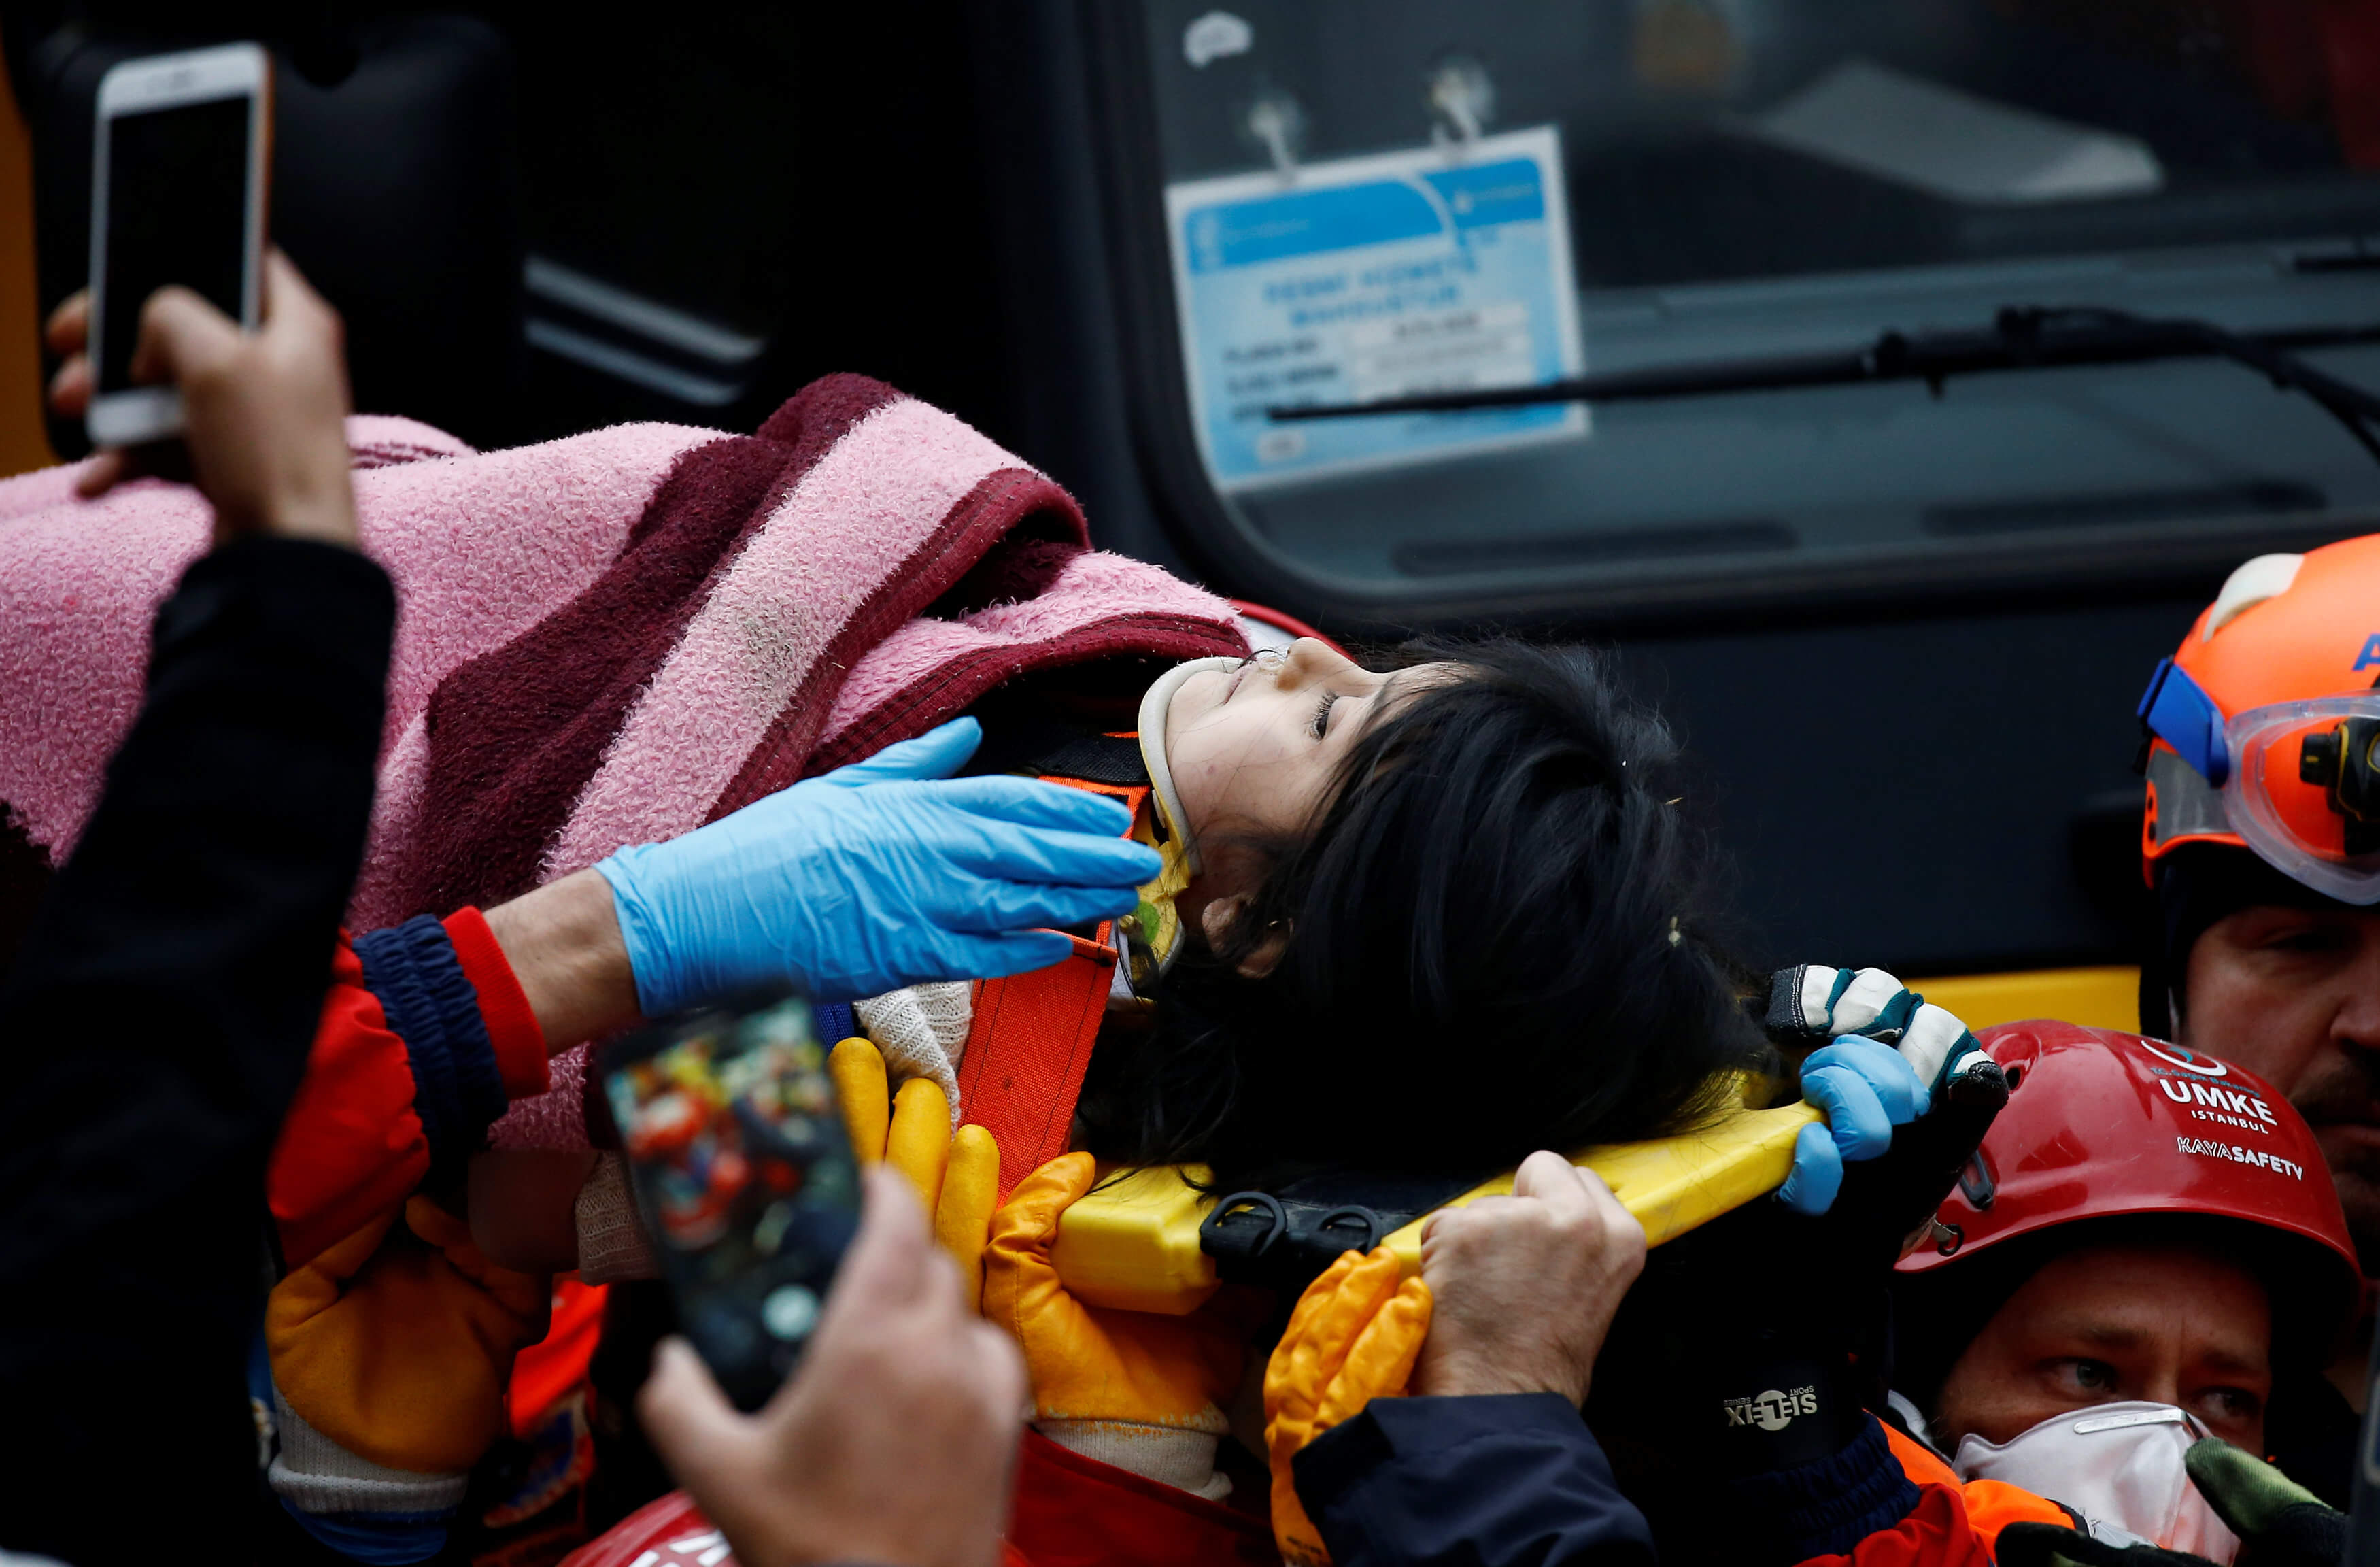 Κωνσταντινούπολη: Θαύμα! Κοριτσάκι ανασύρθηκε ζωντανό από τα ερείπια του κτιρίου που κατέρρευσε [pics, video]